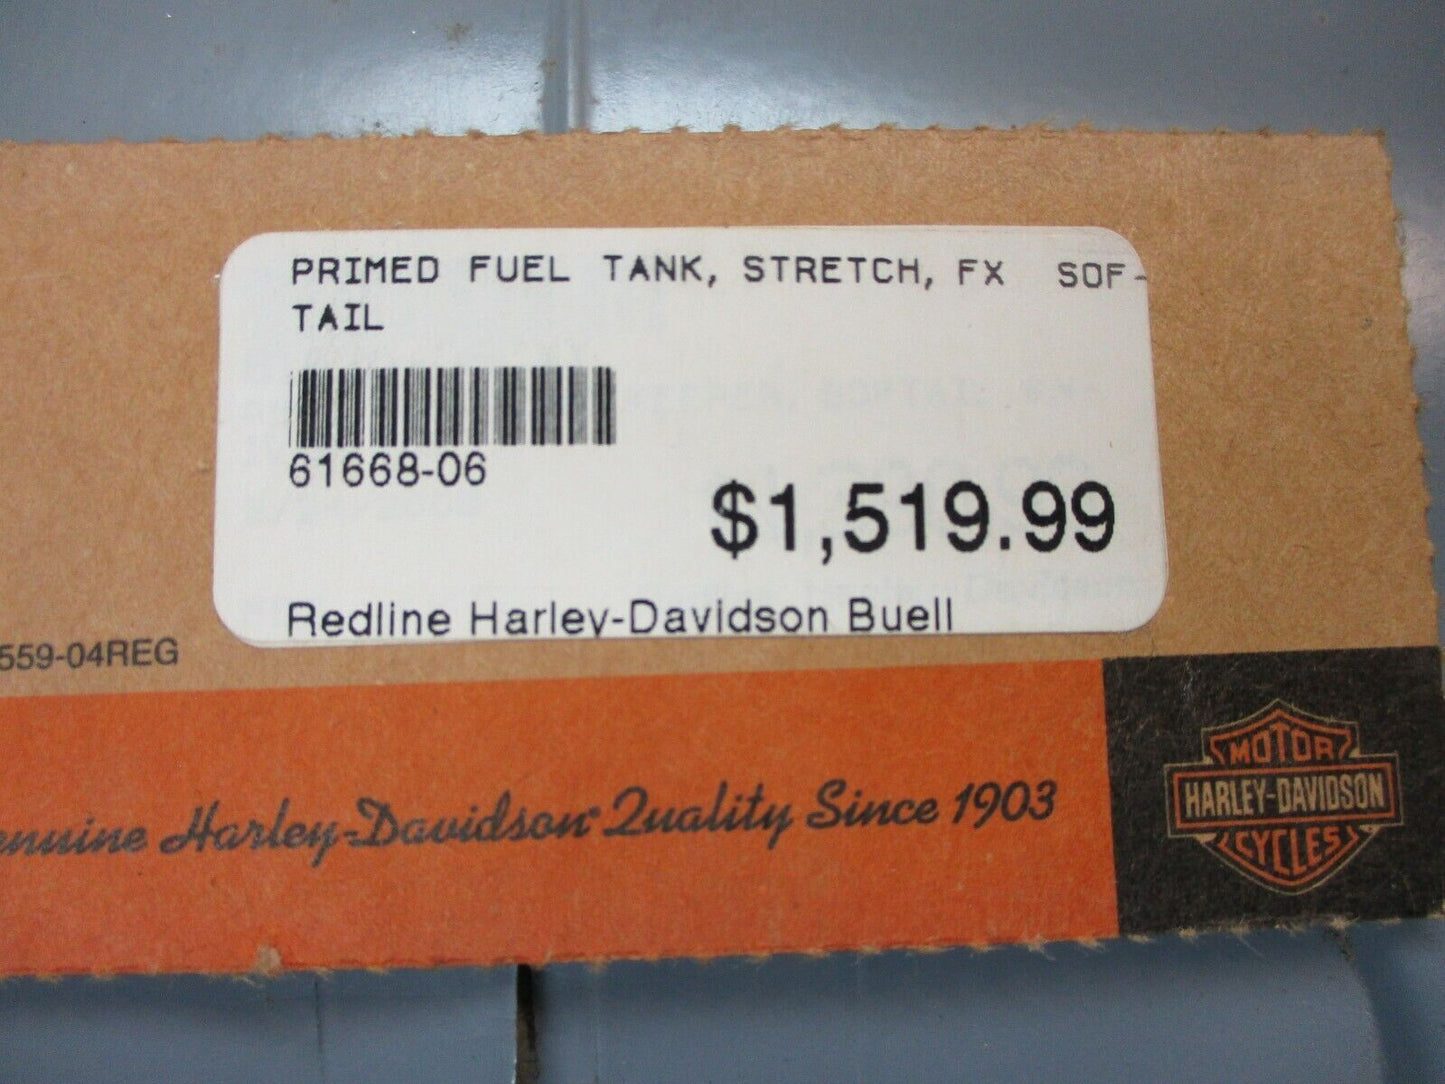 Harley Davidson OEM FXST Stretched Fuel Tank Primed EFI 61668-06